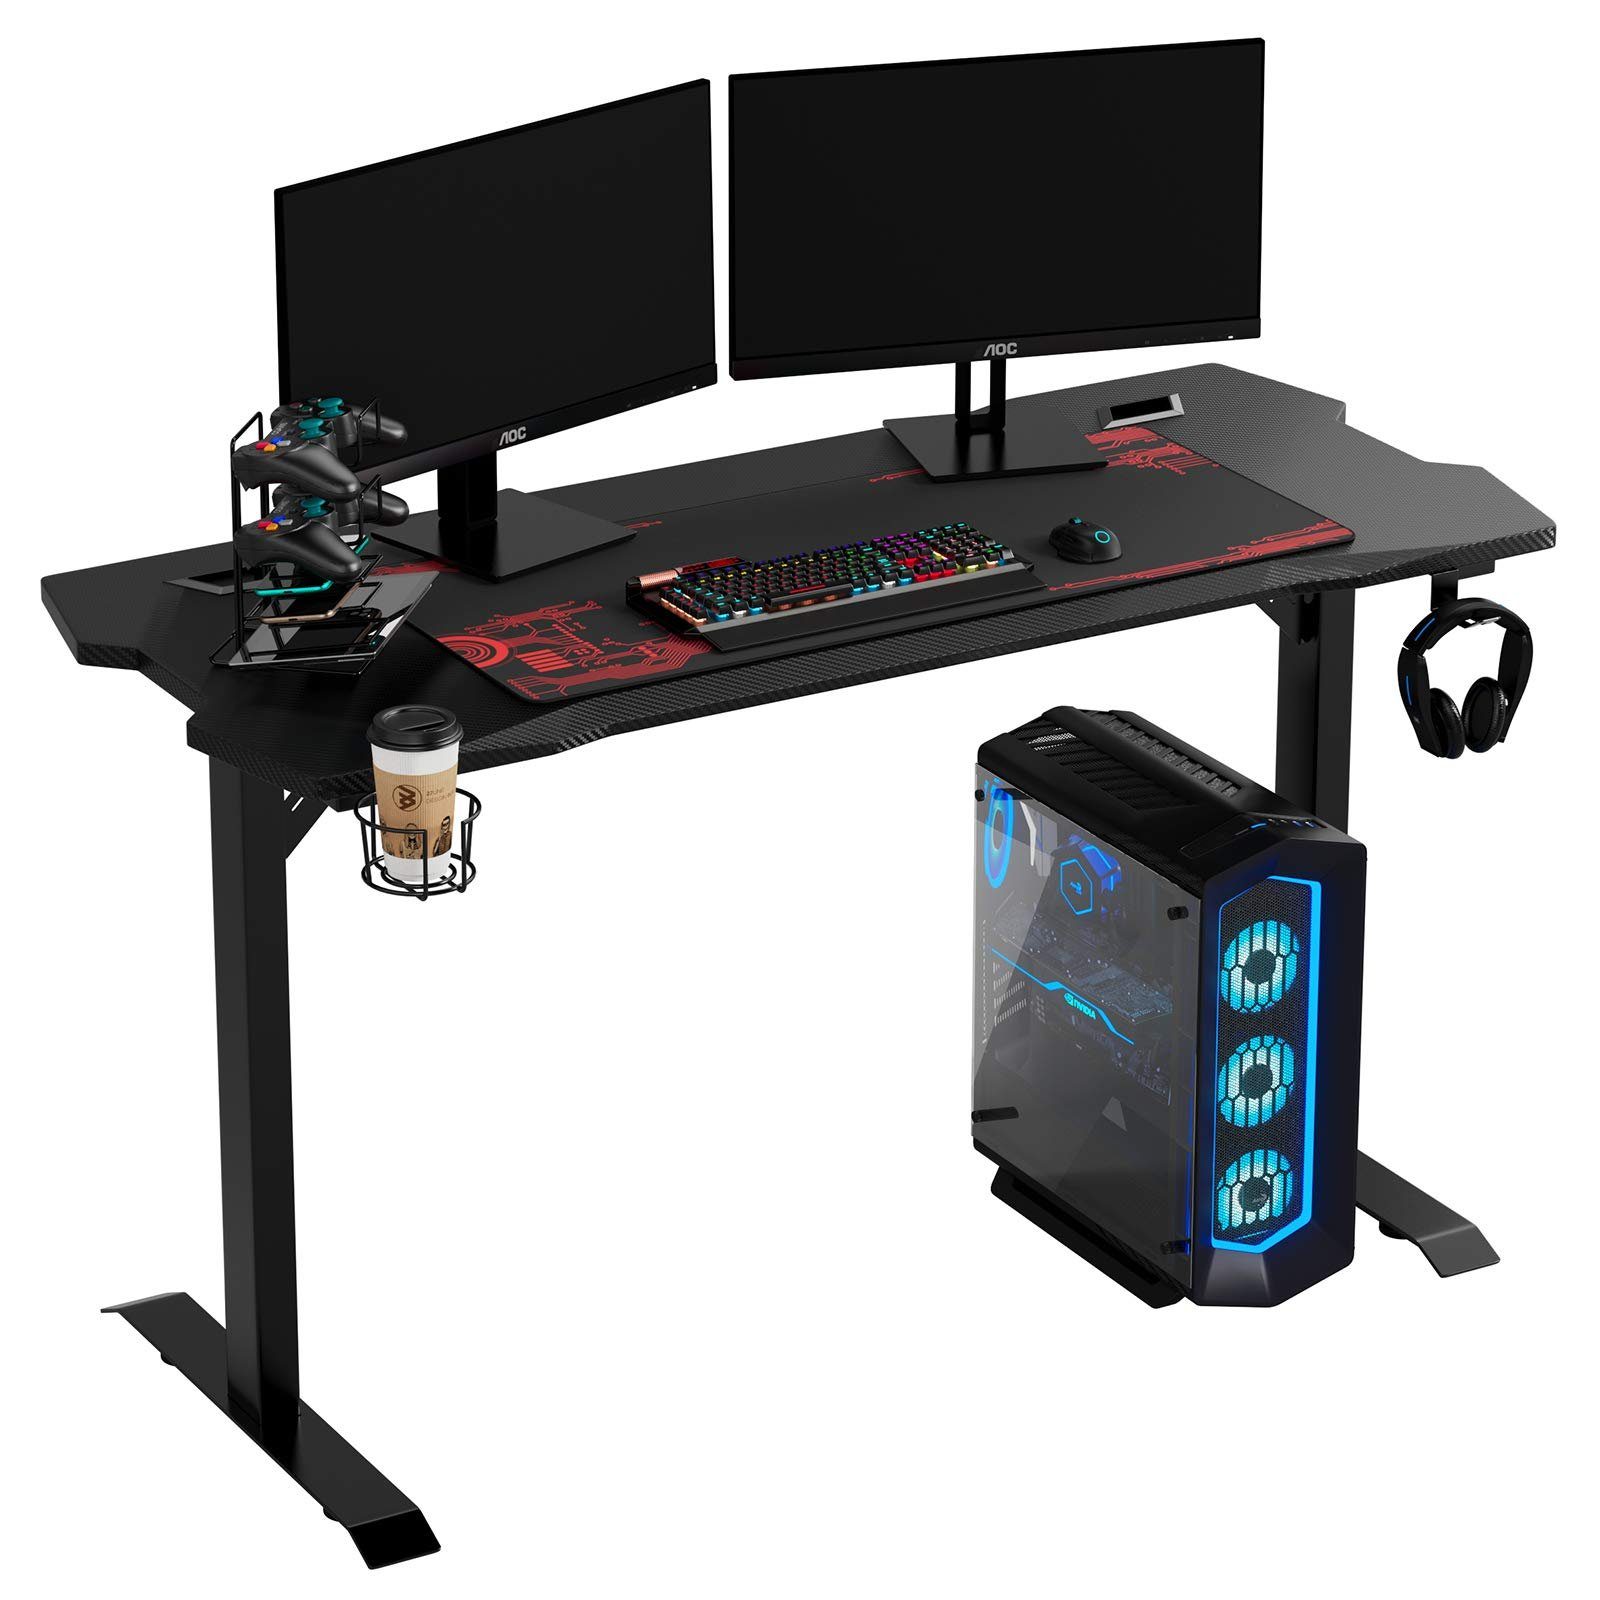 140cm Tisch, Computertisch, mit Schreibtisch, Gamingtisch, Mauspad Gamer Homfa schwarz,